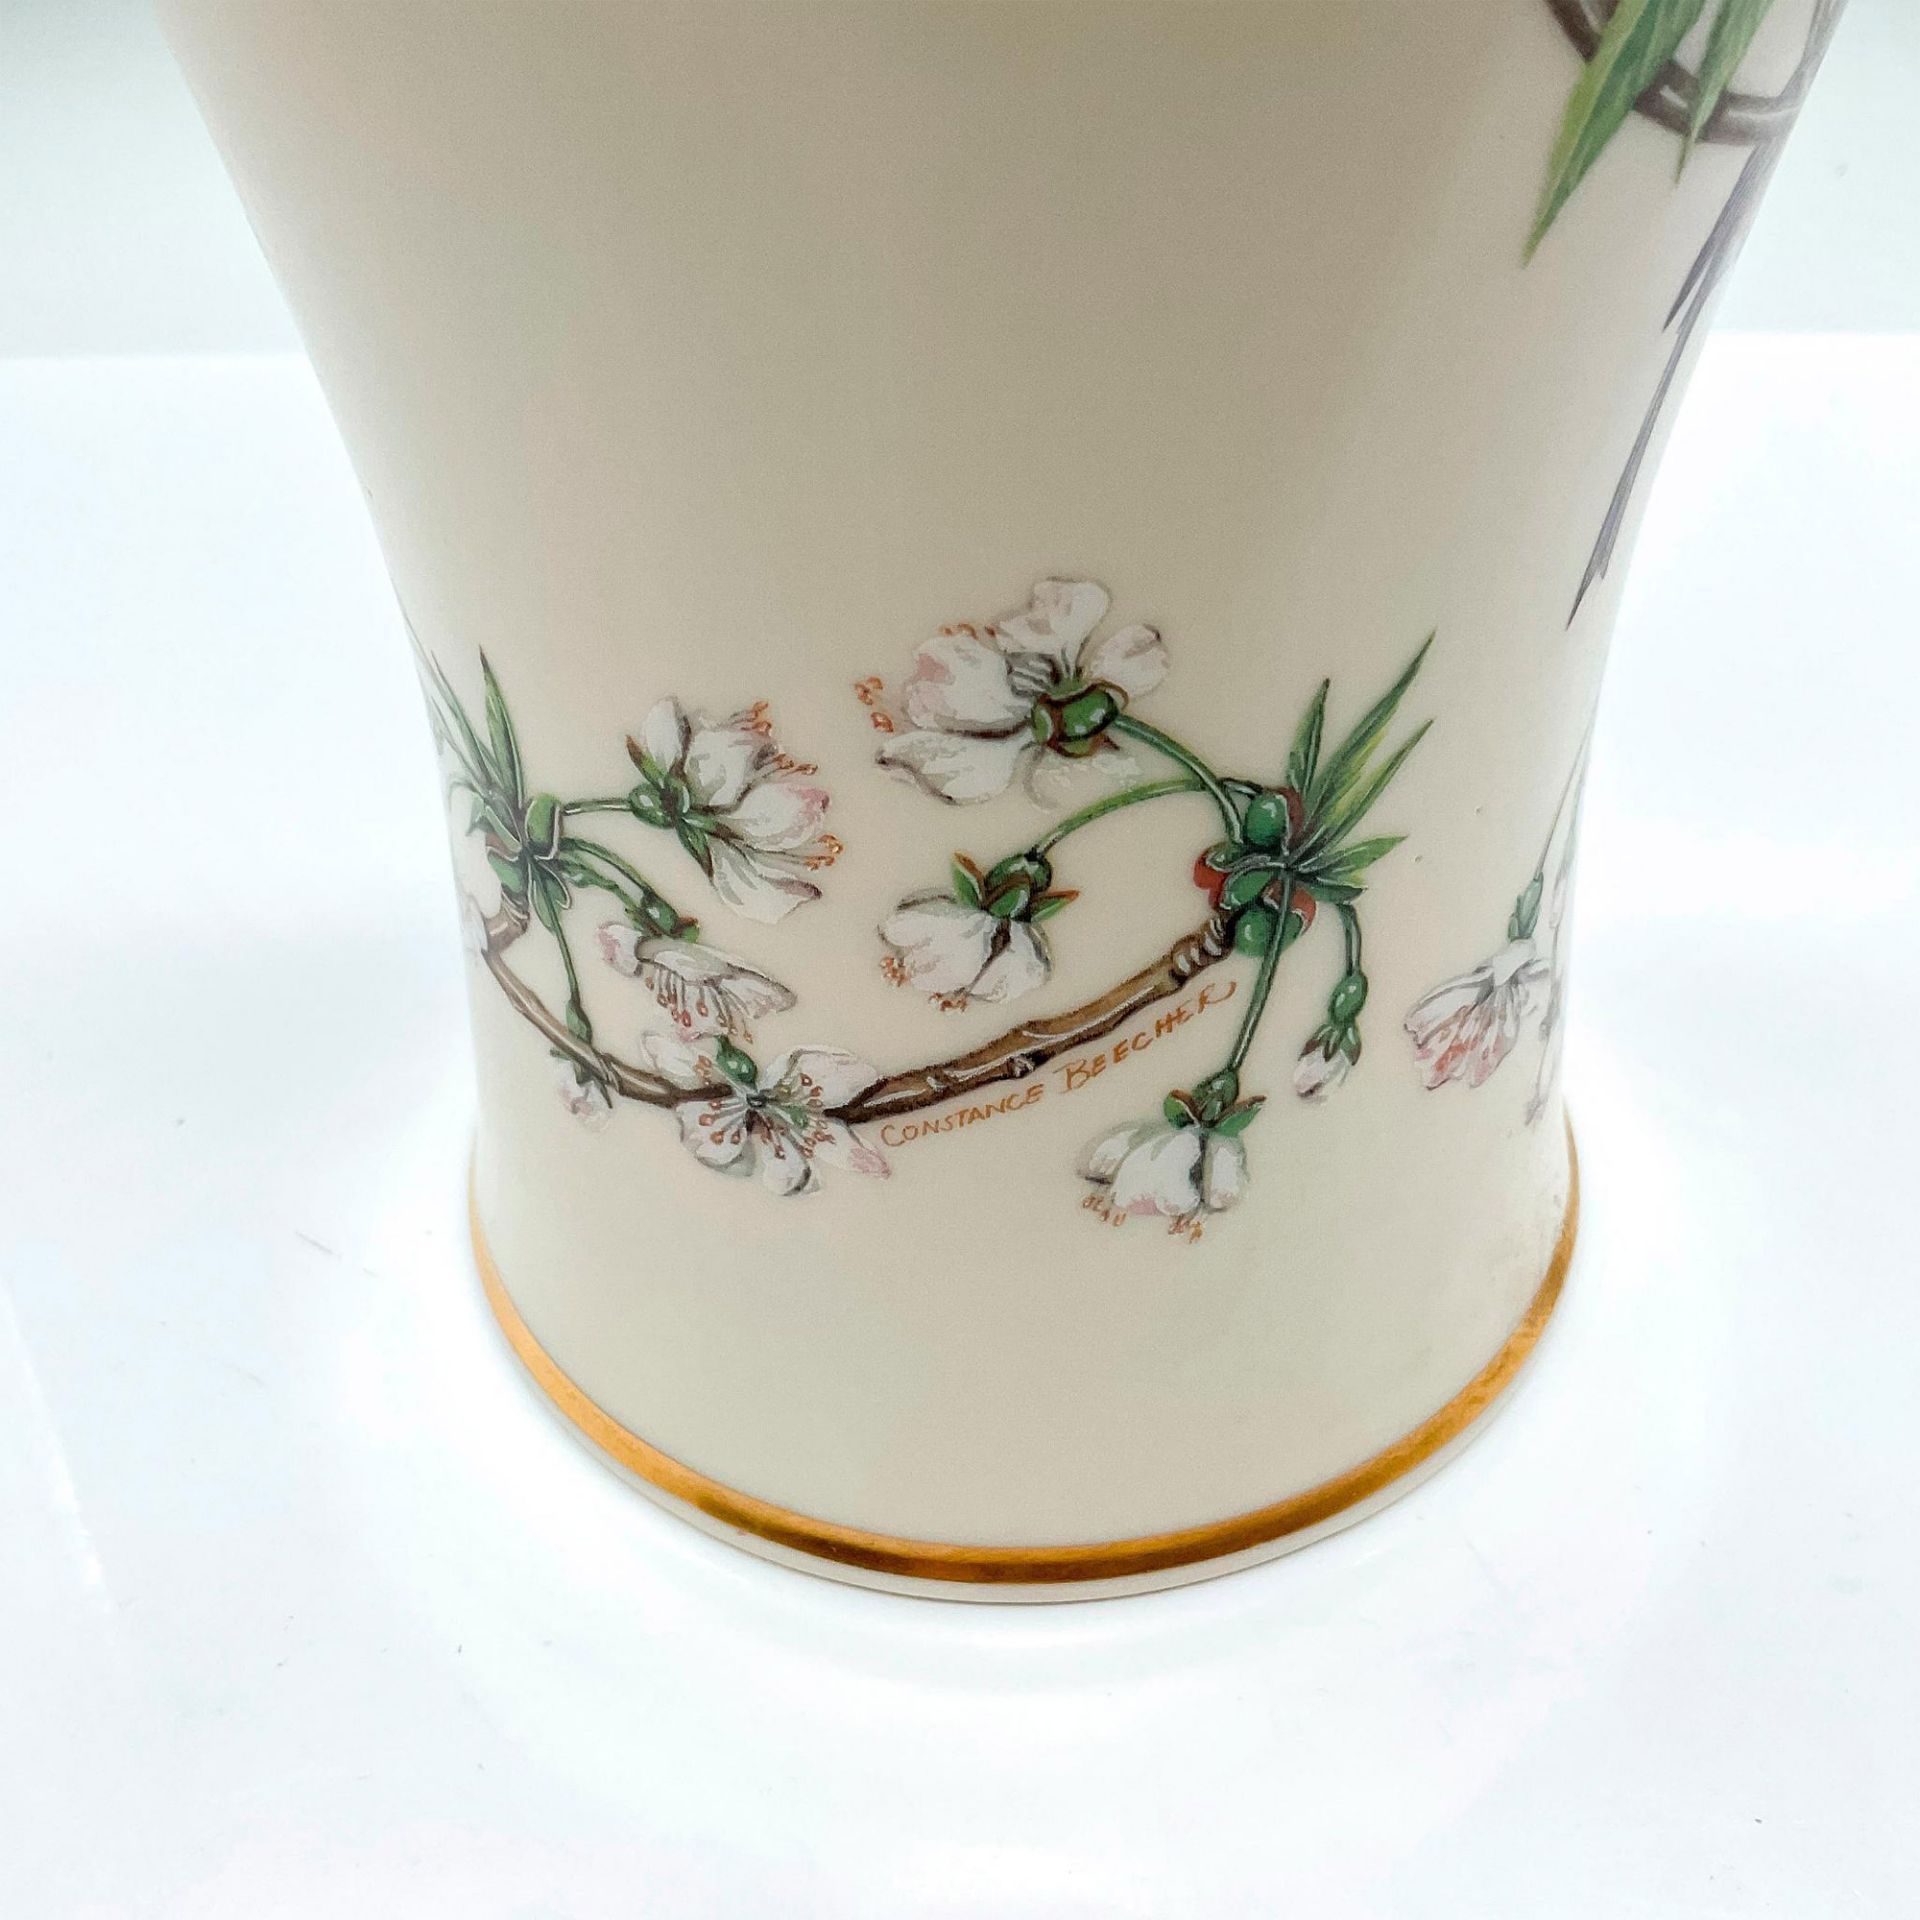 Lenox Fine China Vase, The George Washington - Image 4 of 4